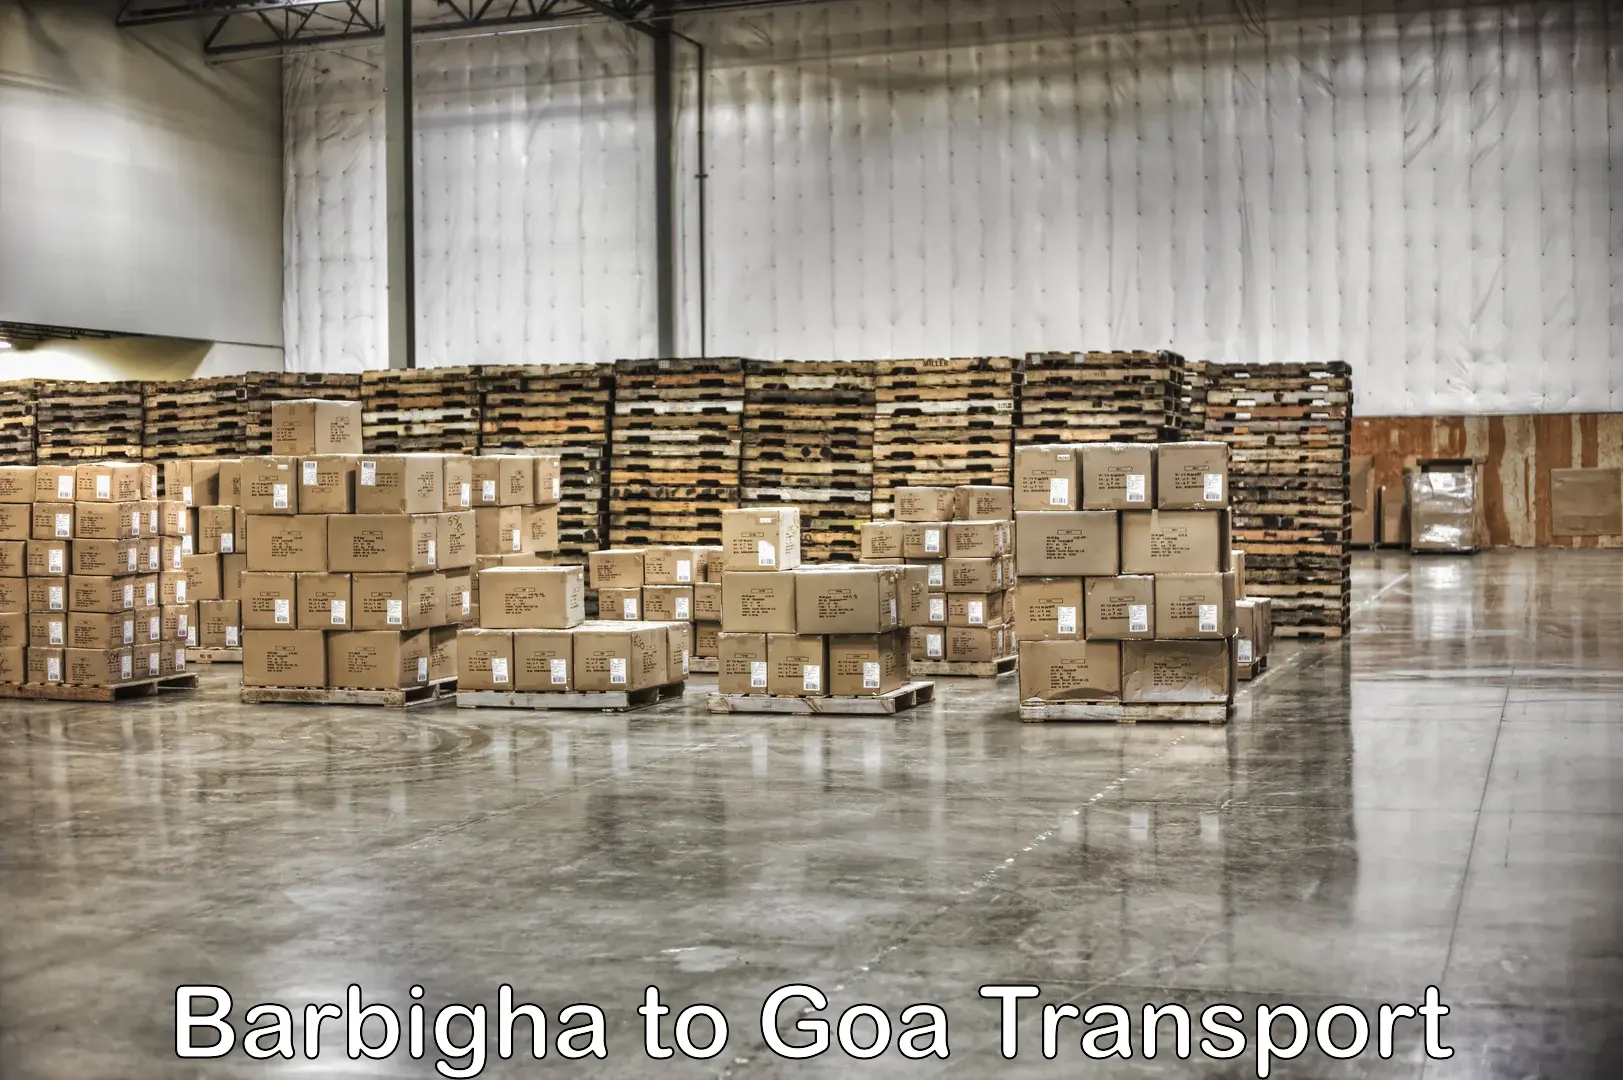 Daily parcel service transport Barbigha to Mormugao Port